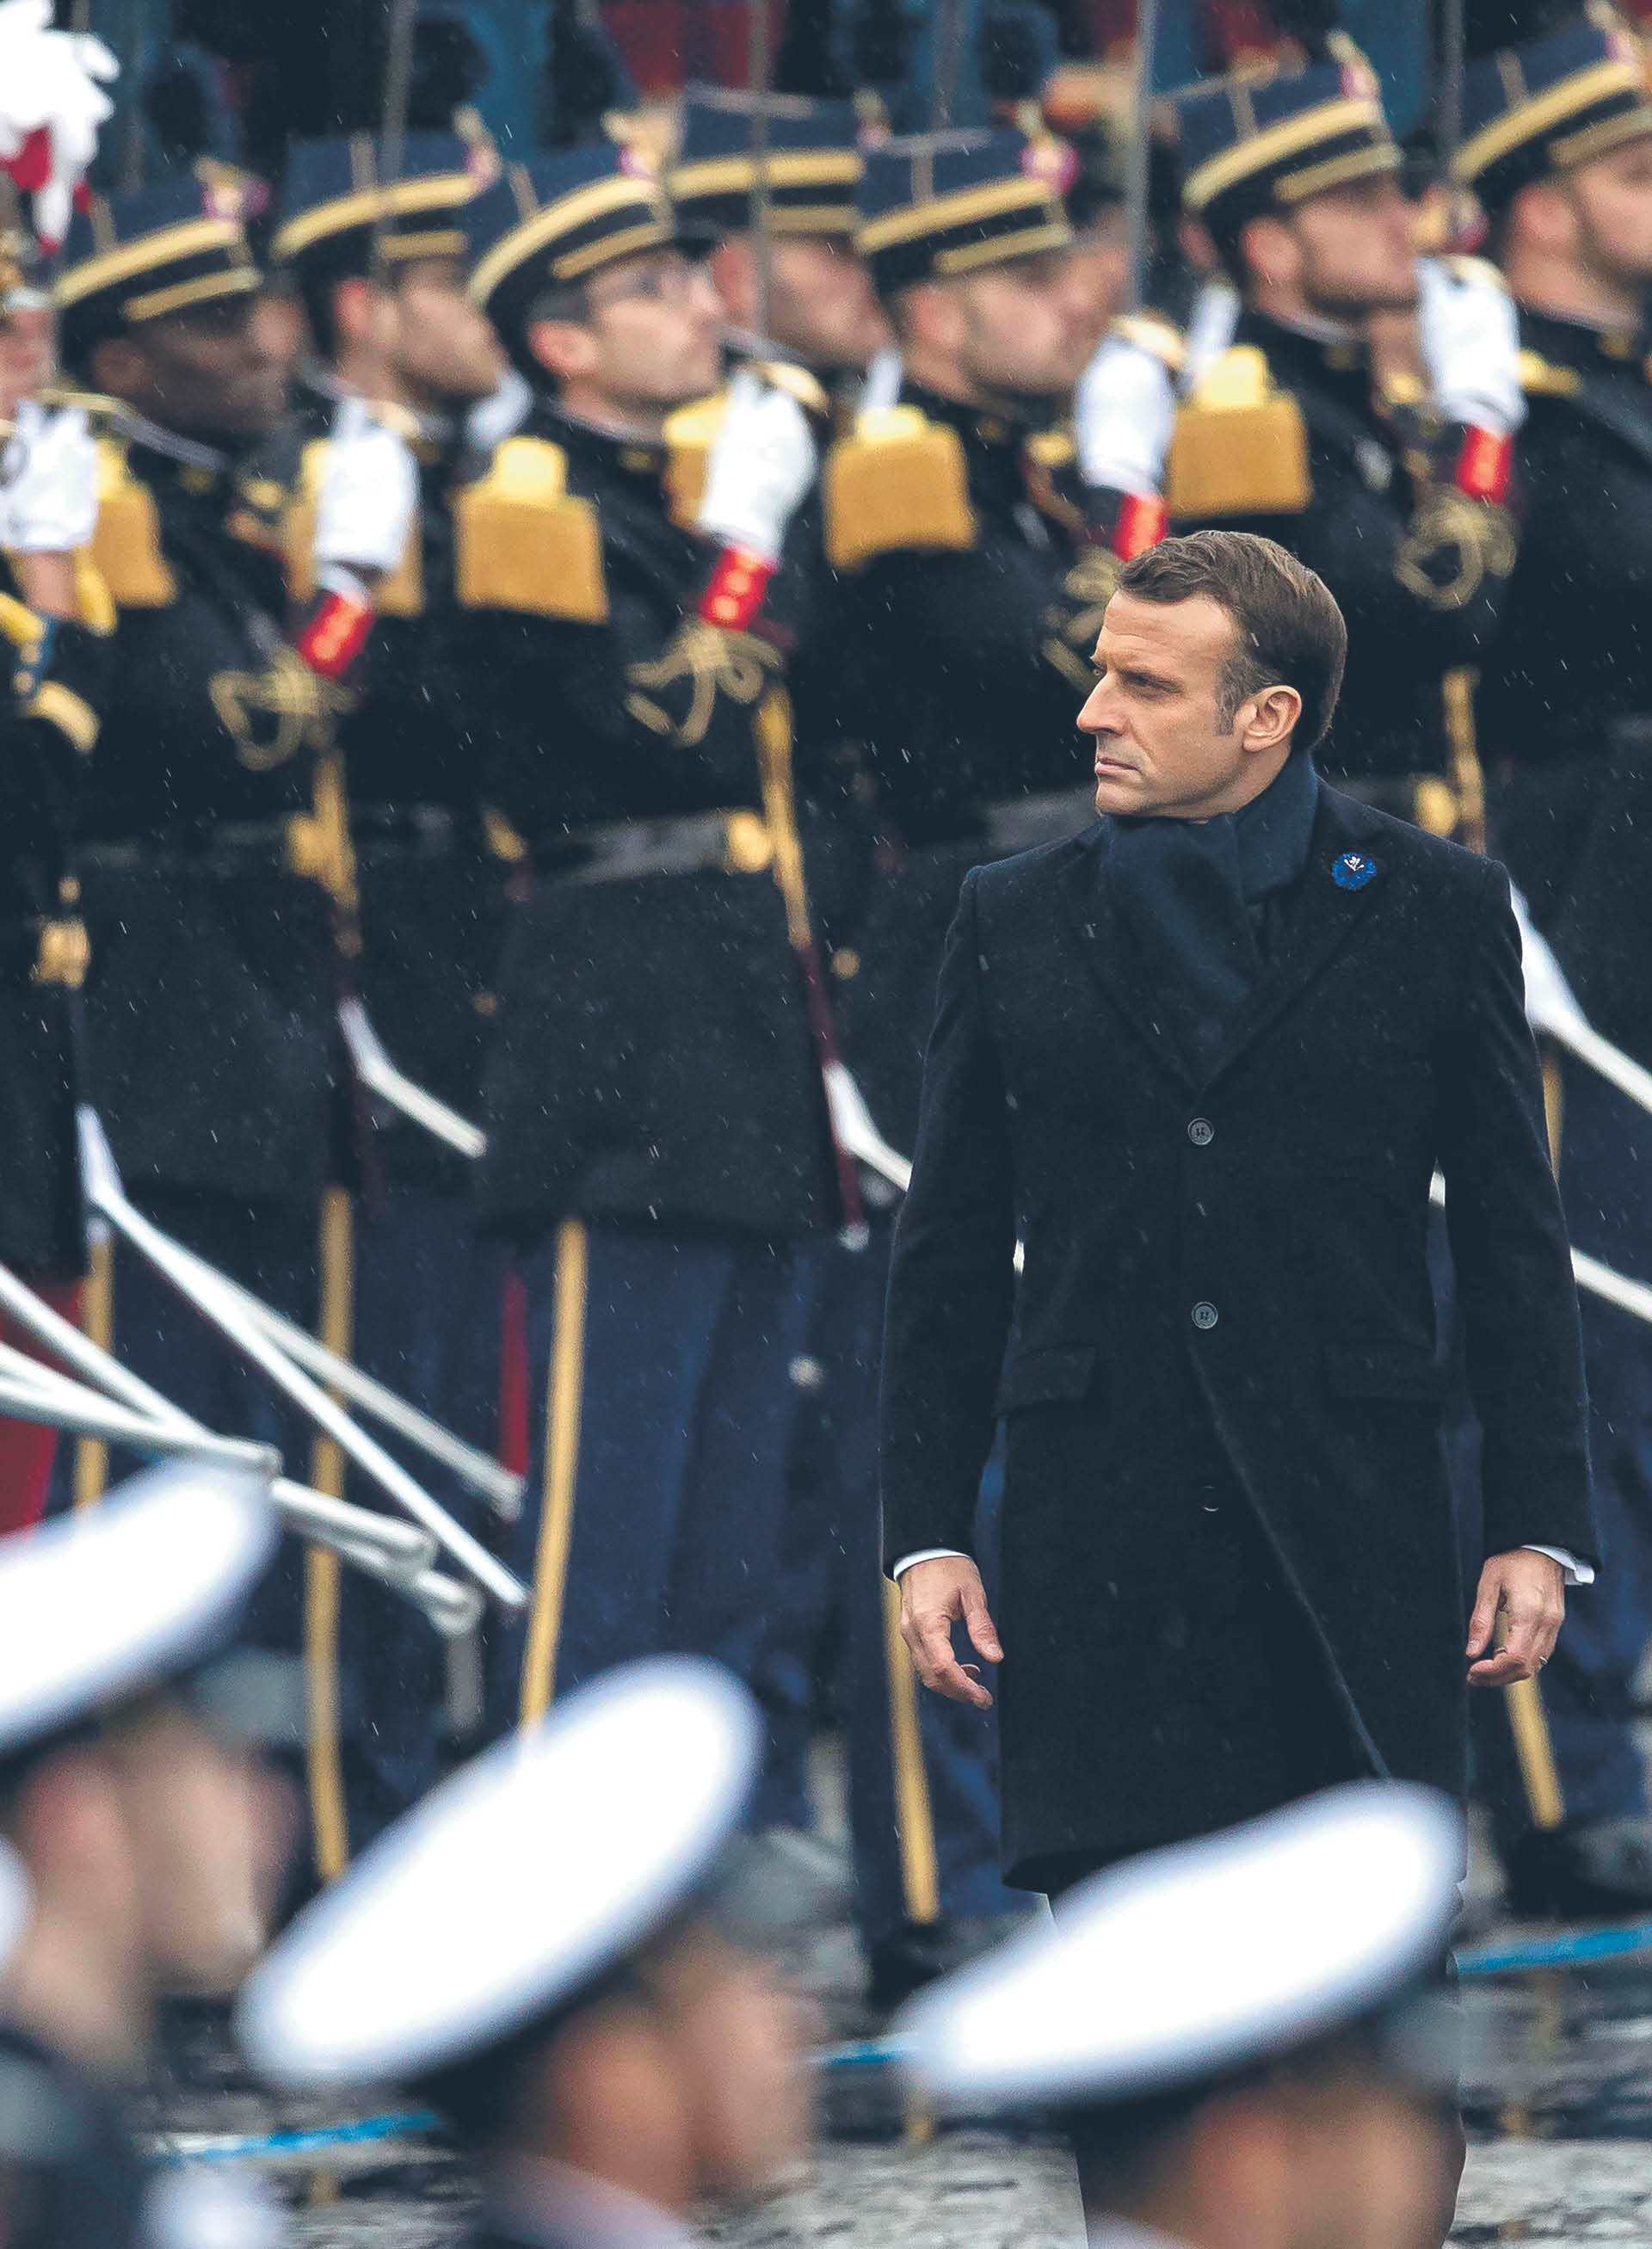 Emmanuel Macron uważnie przygląda się konkurentom z prawej strony sceny politycznej